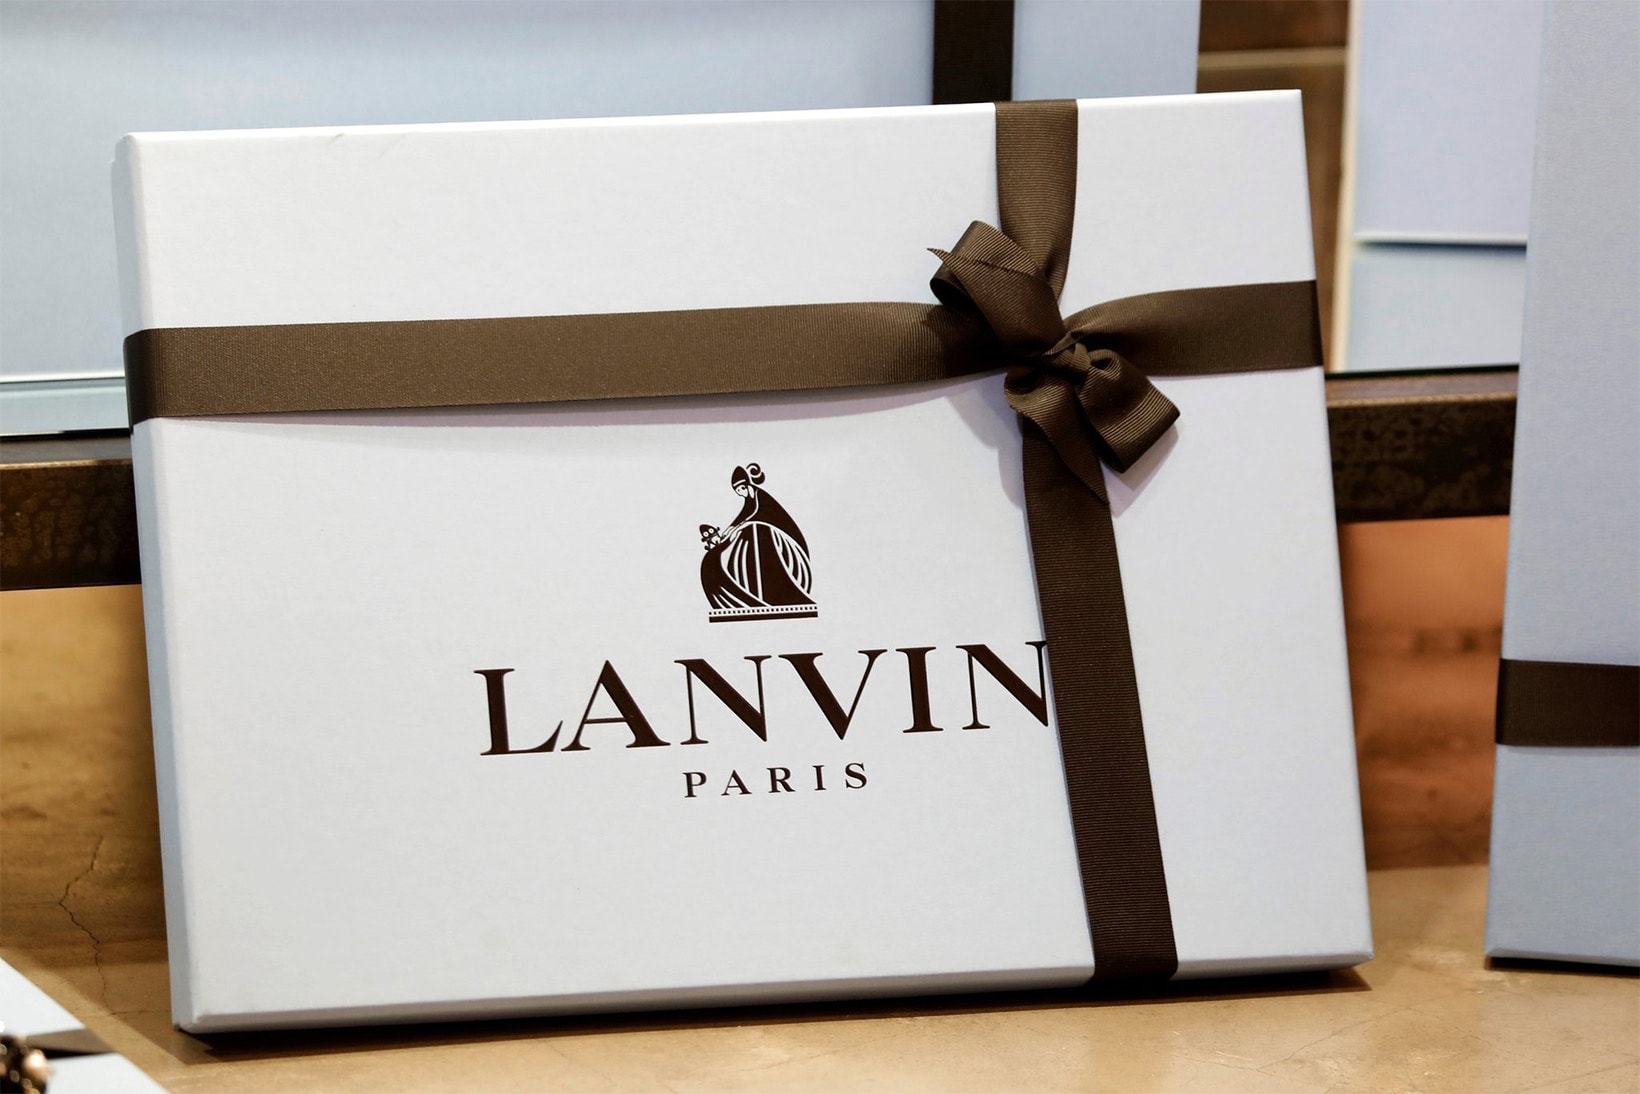 復星國際成功收購 Lanvin 主要股權